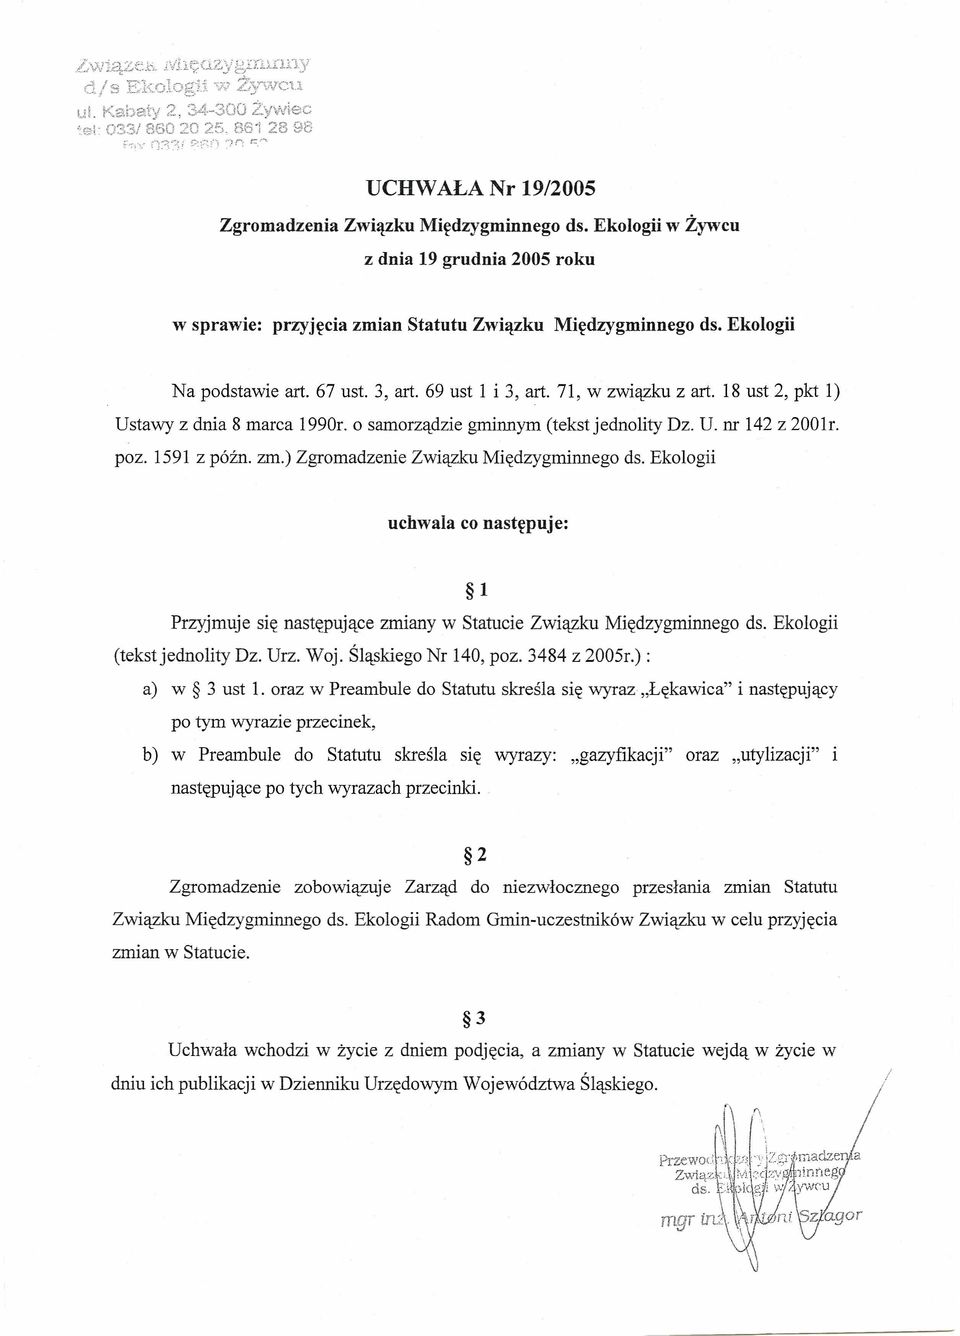 Ekologii w Żywcu z dnia 19 grudnia 2005 roku w sprawie: przyjęcia zmian Statutu Związku Międzygminnego ds. Ekologii Na podstawie art. 67 ust. 3, art. 69 ust 1 i 3, art. 71, w związku z art.